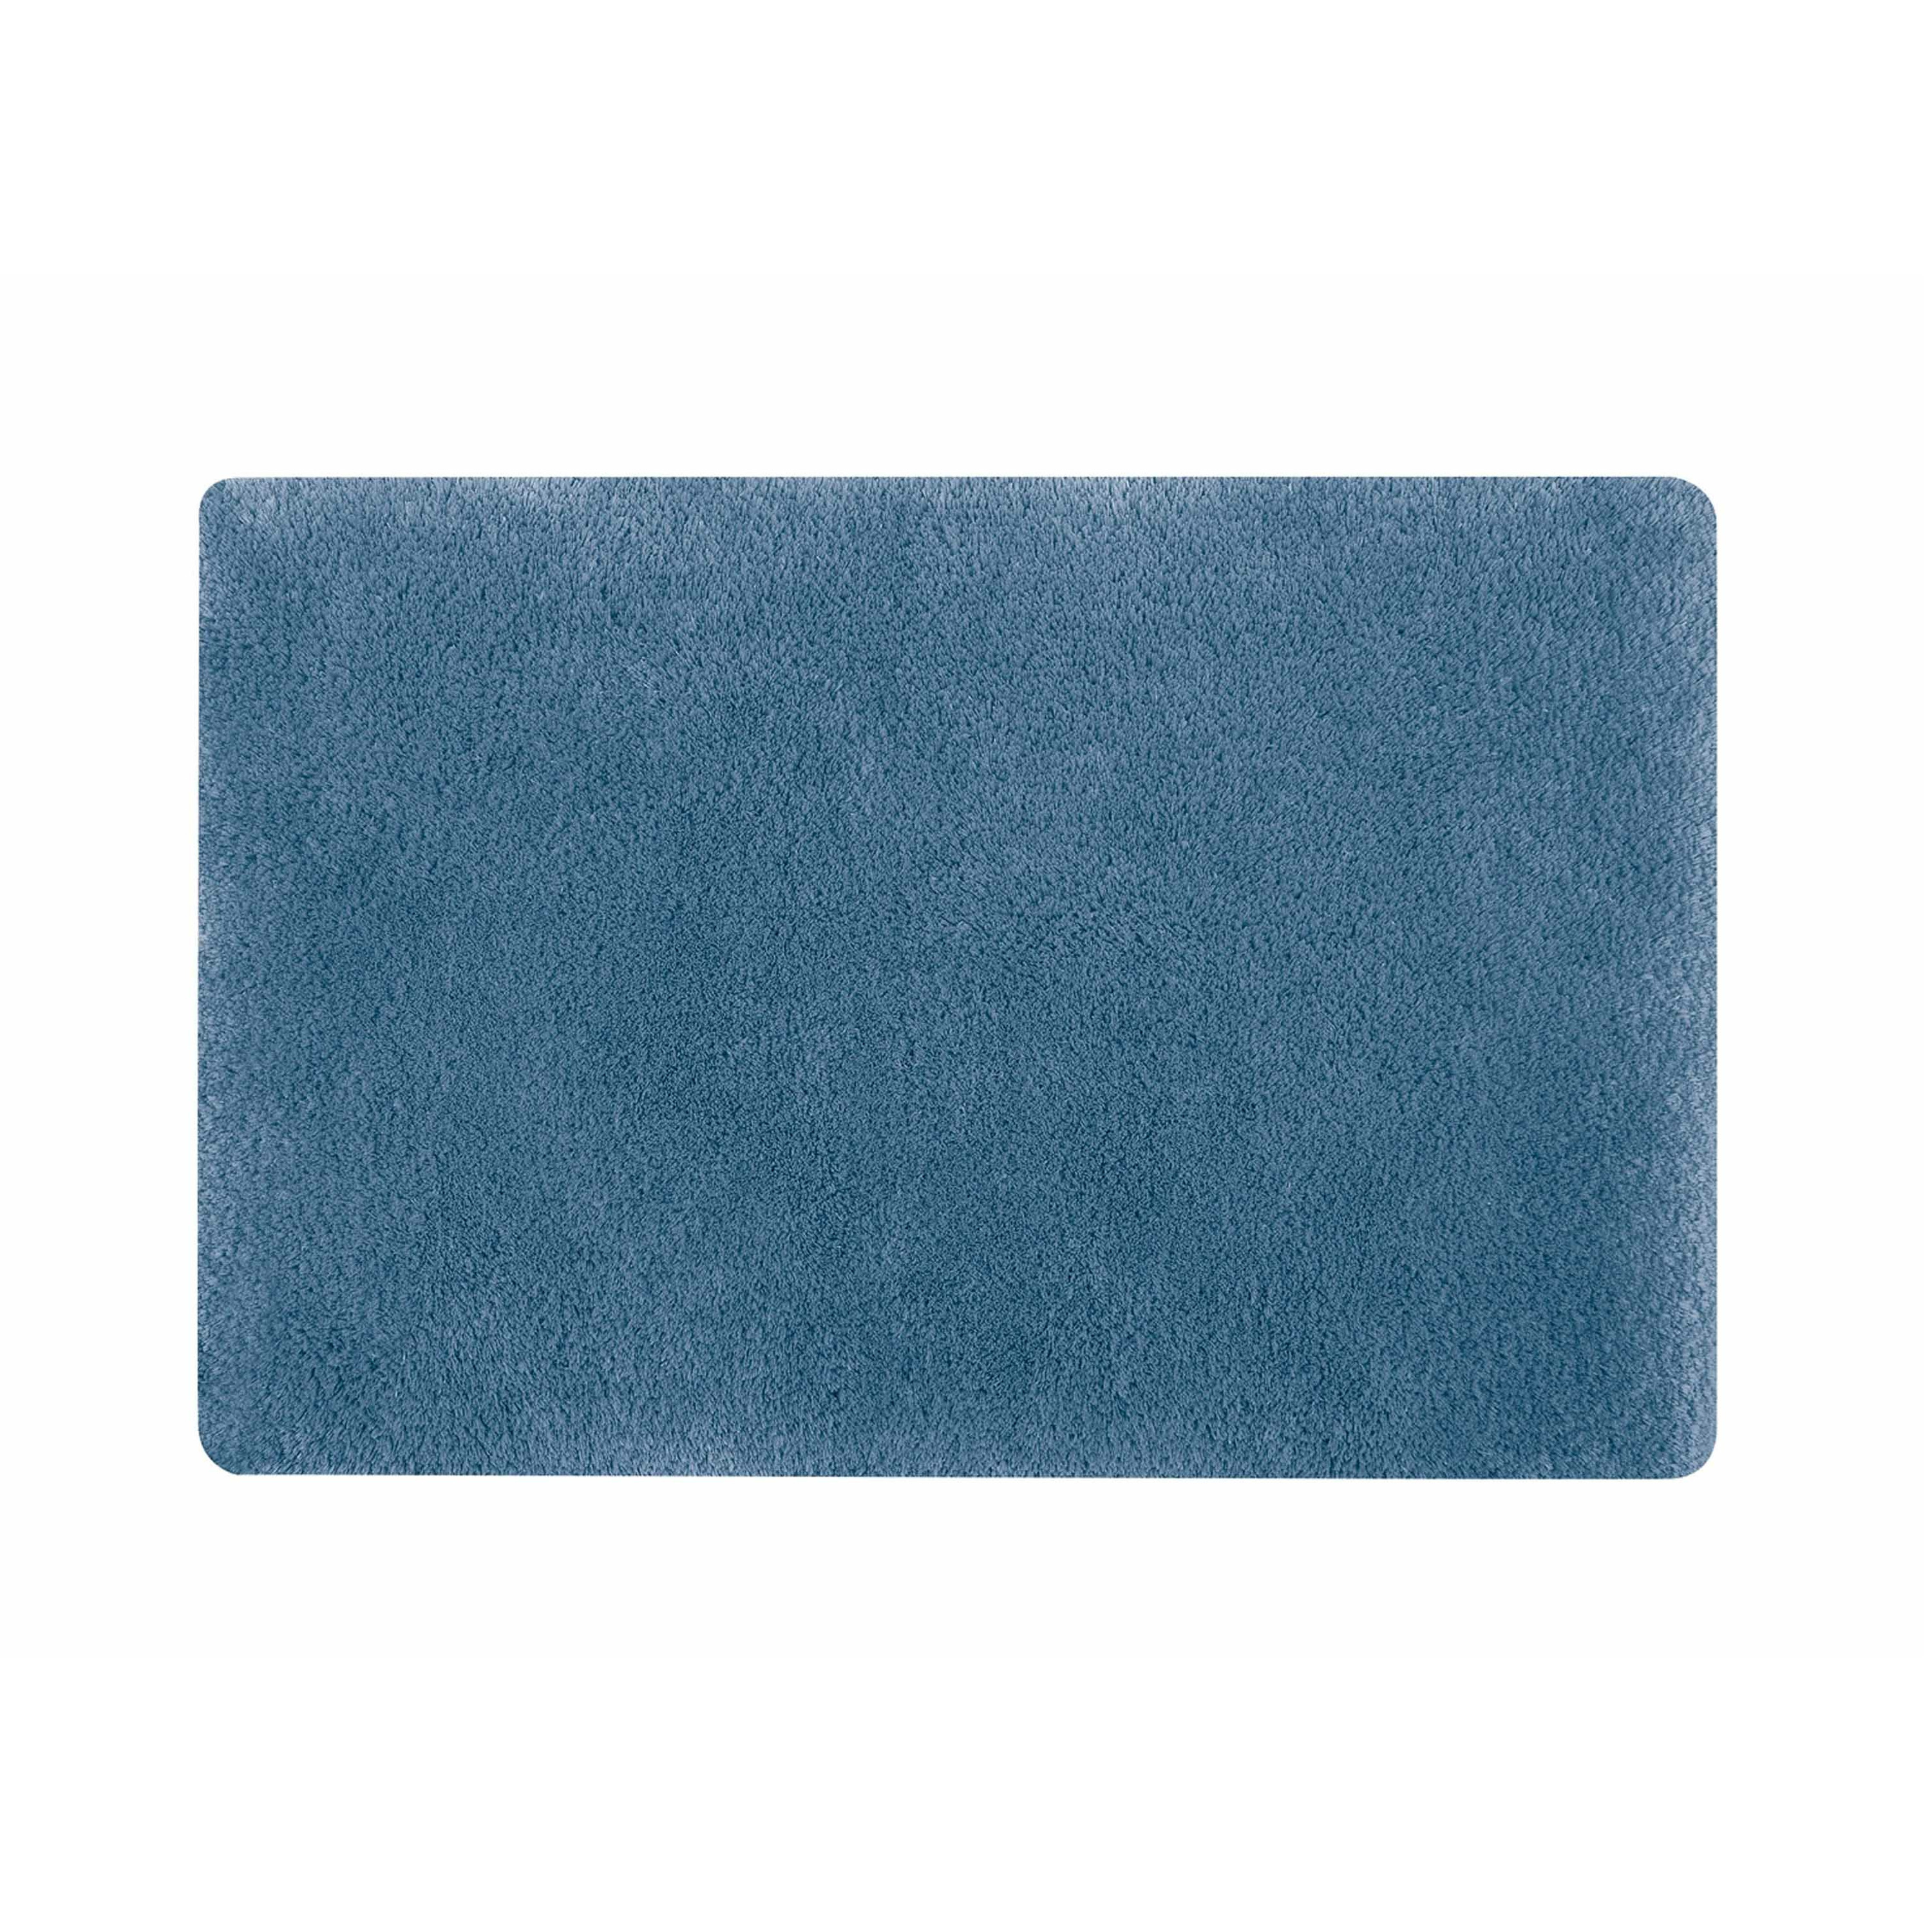 Spirella badkamer vloer kleedje-badmat tapijt hoogpolig en luxe uitvoering blauw 60 x 90 cm Microfib